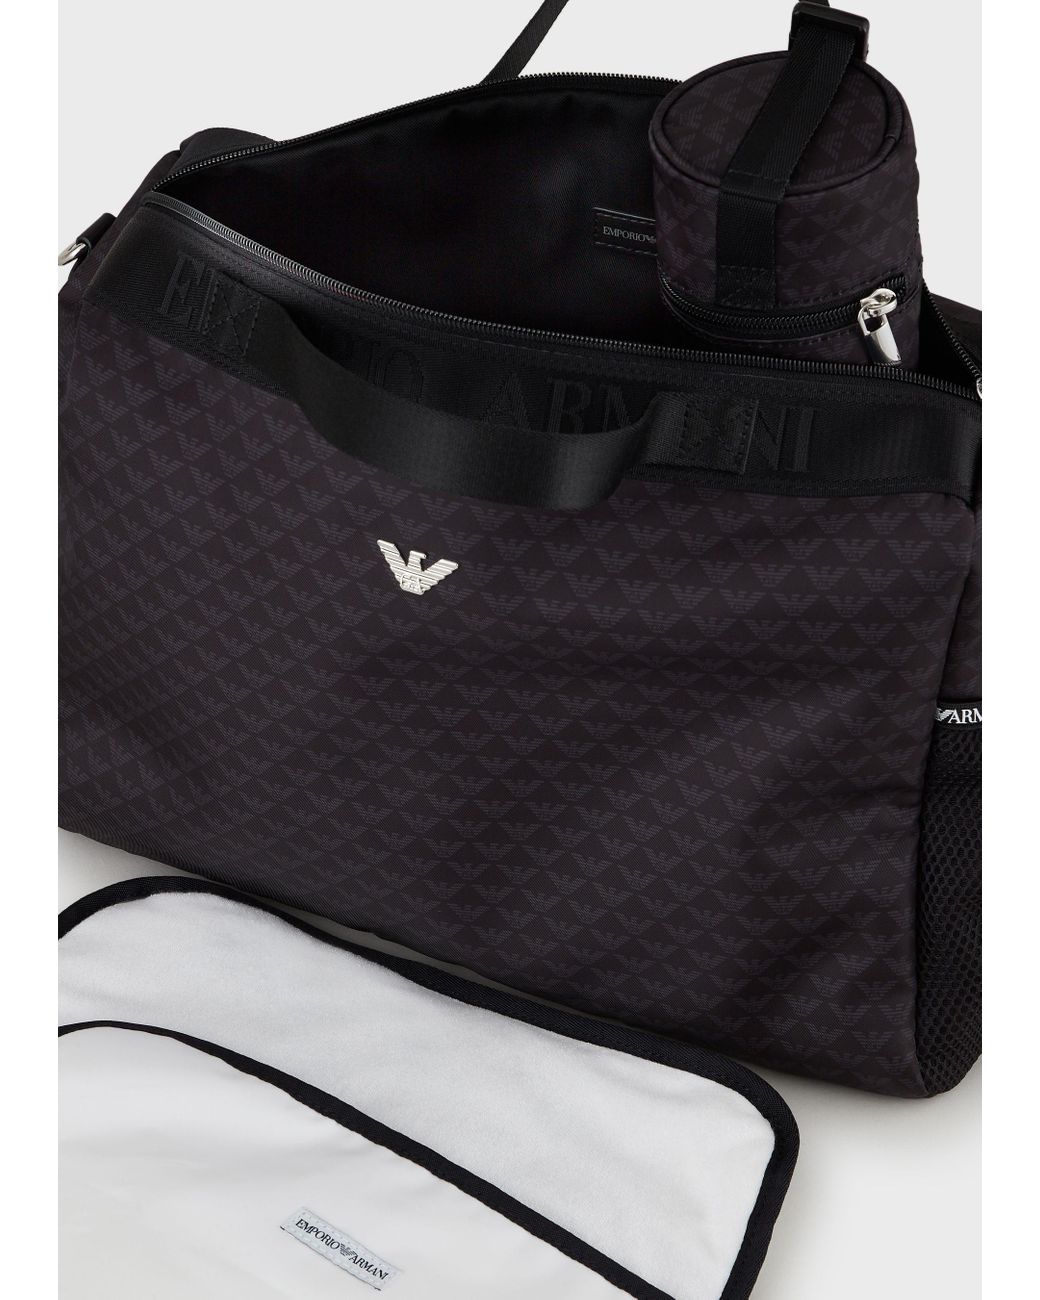 Emporio Armani Diaper Bags in Black | Lyst